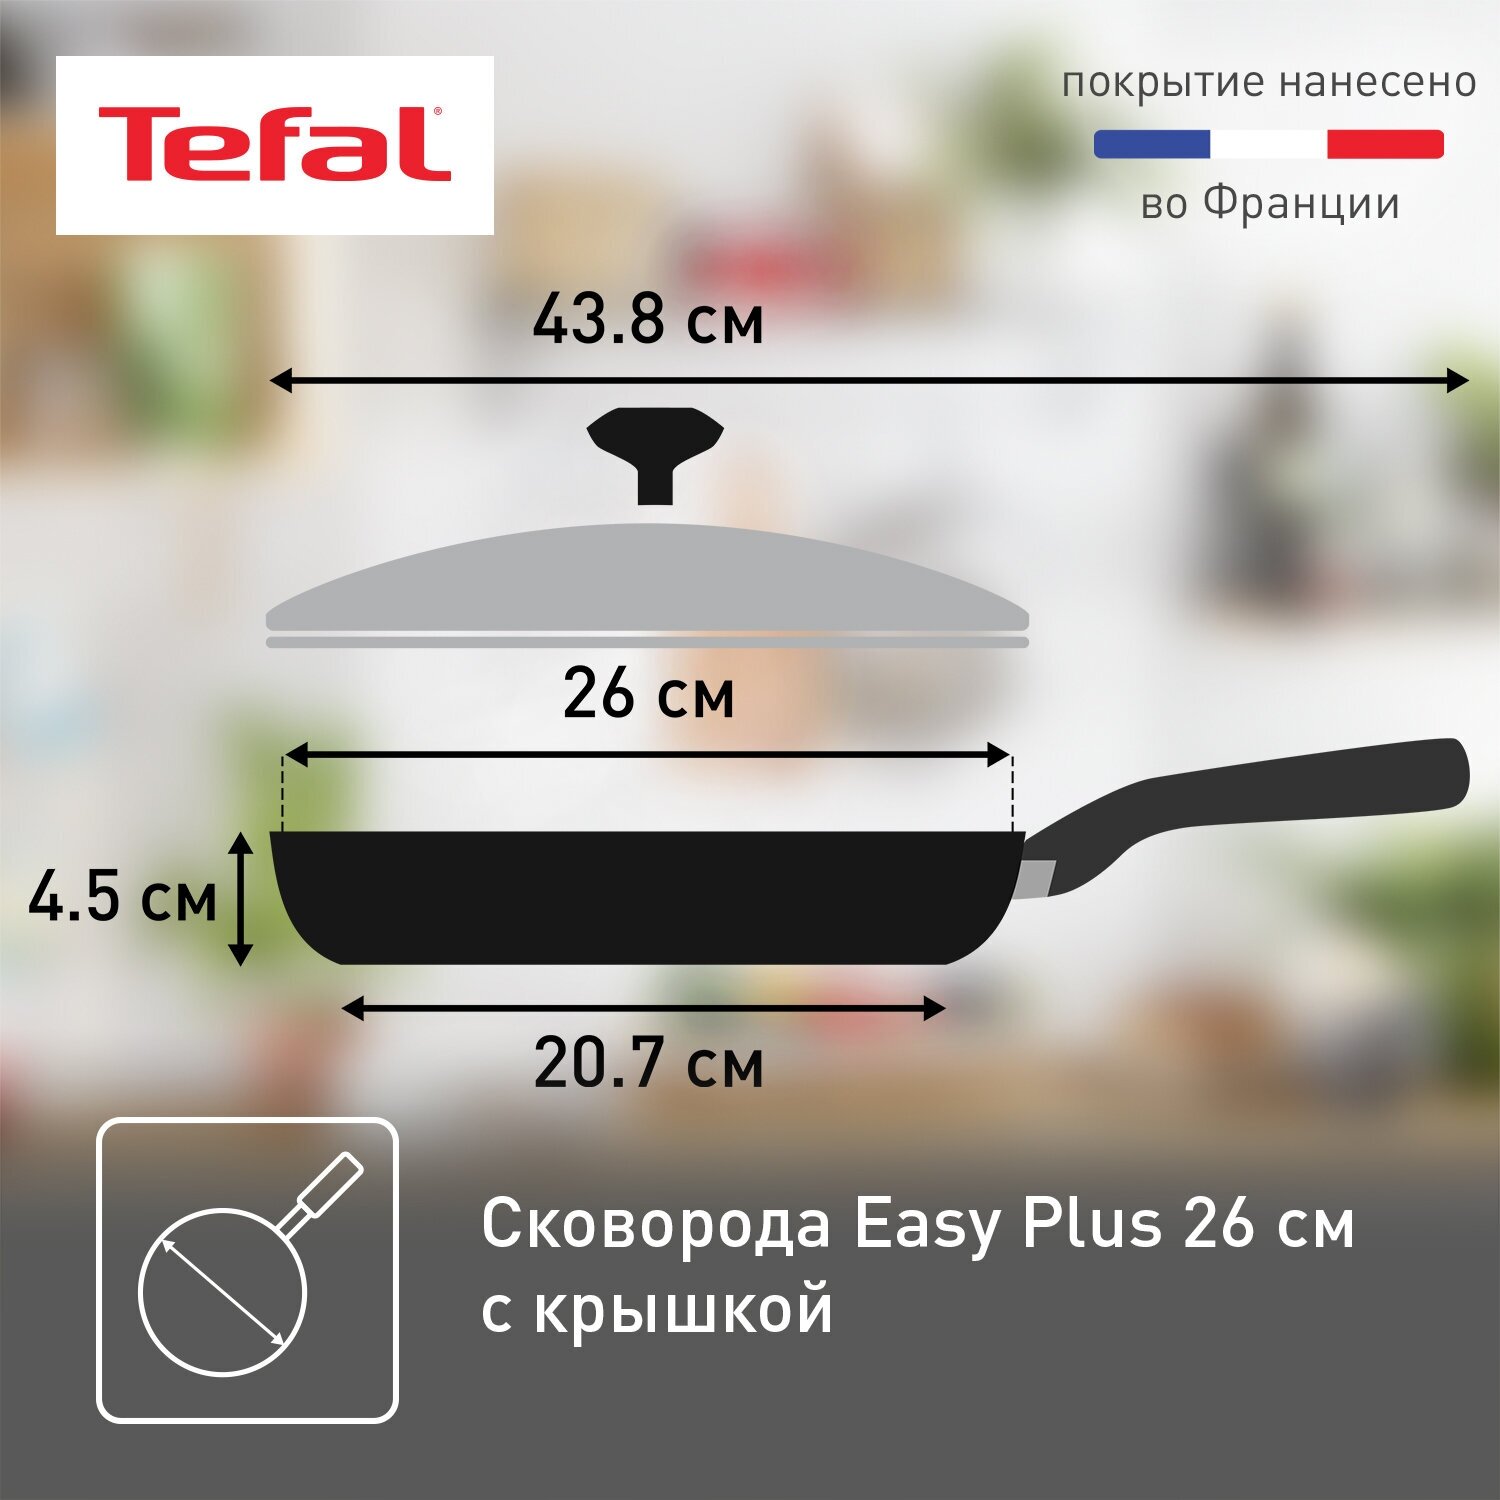 Сковорода с крышкой Tefal Easy Plus 04206926, диаметр 26 cм, с индикатором температуры, с антипригарным покрытием, для газовых, электрических плит